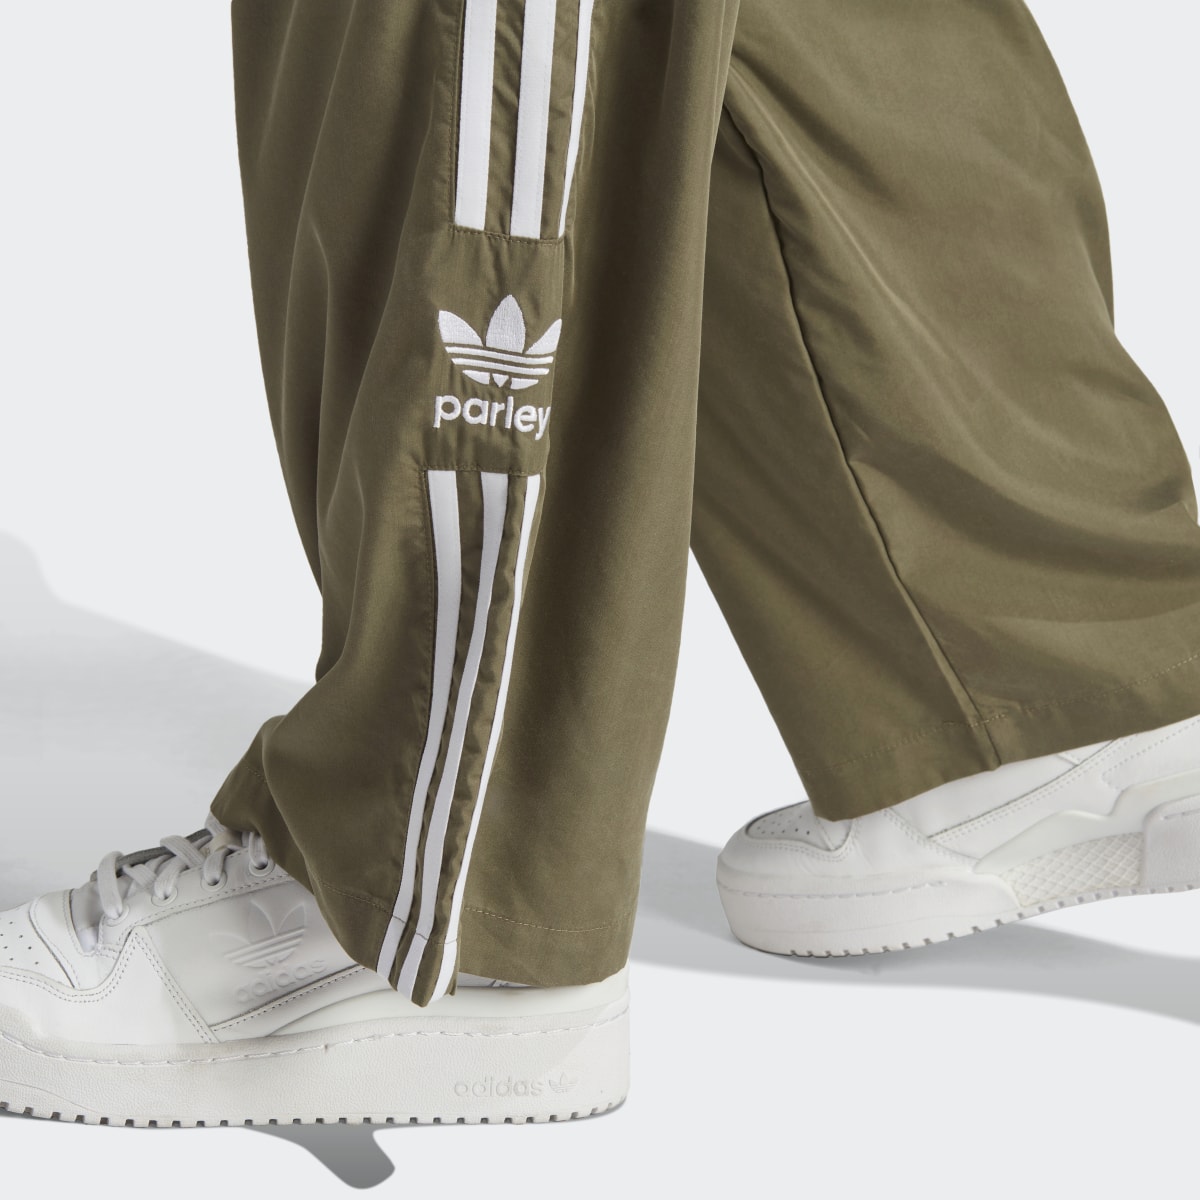 Adidas Pantaloni Parley. 6